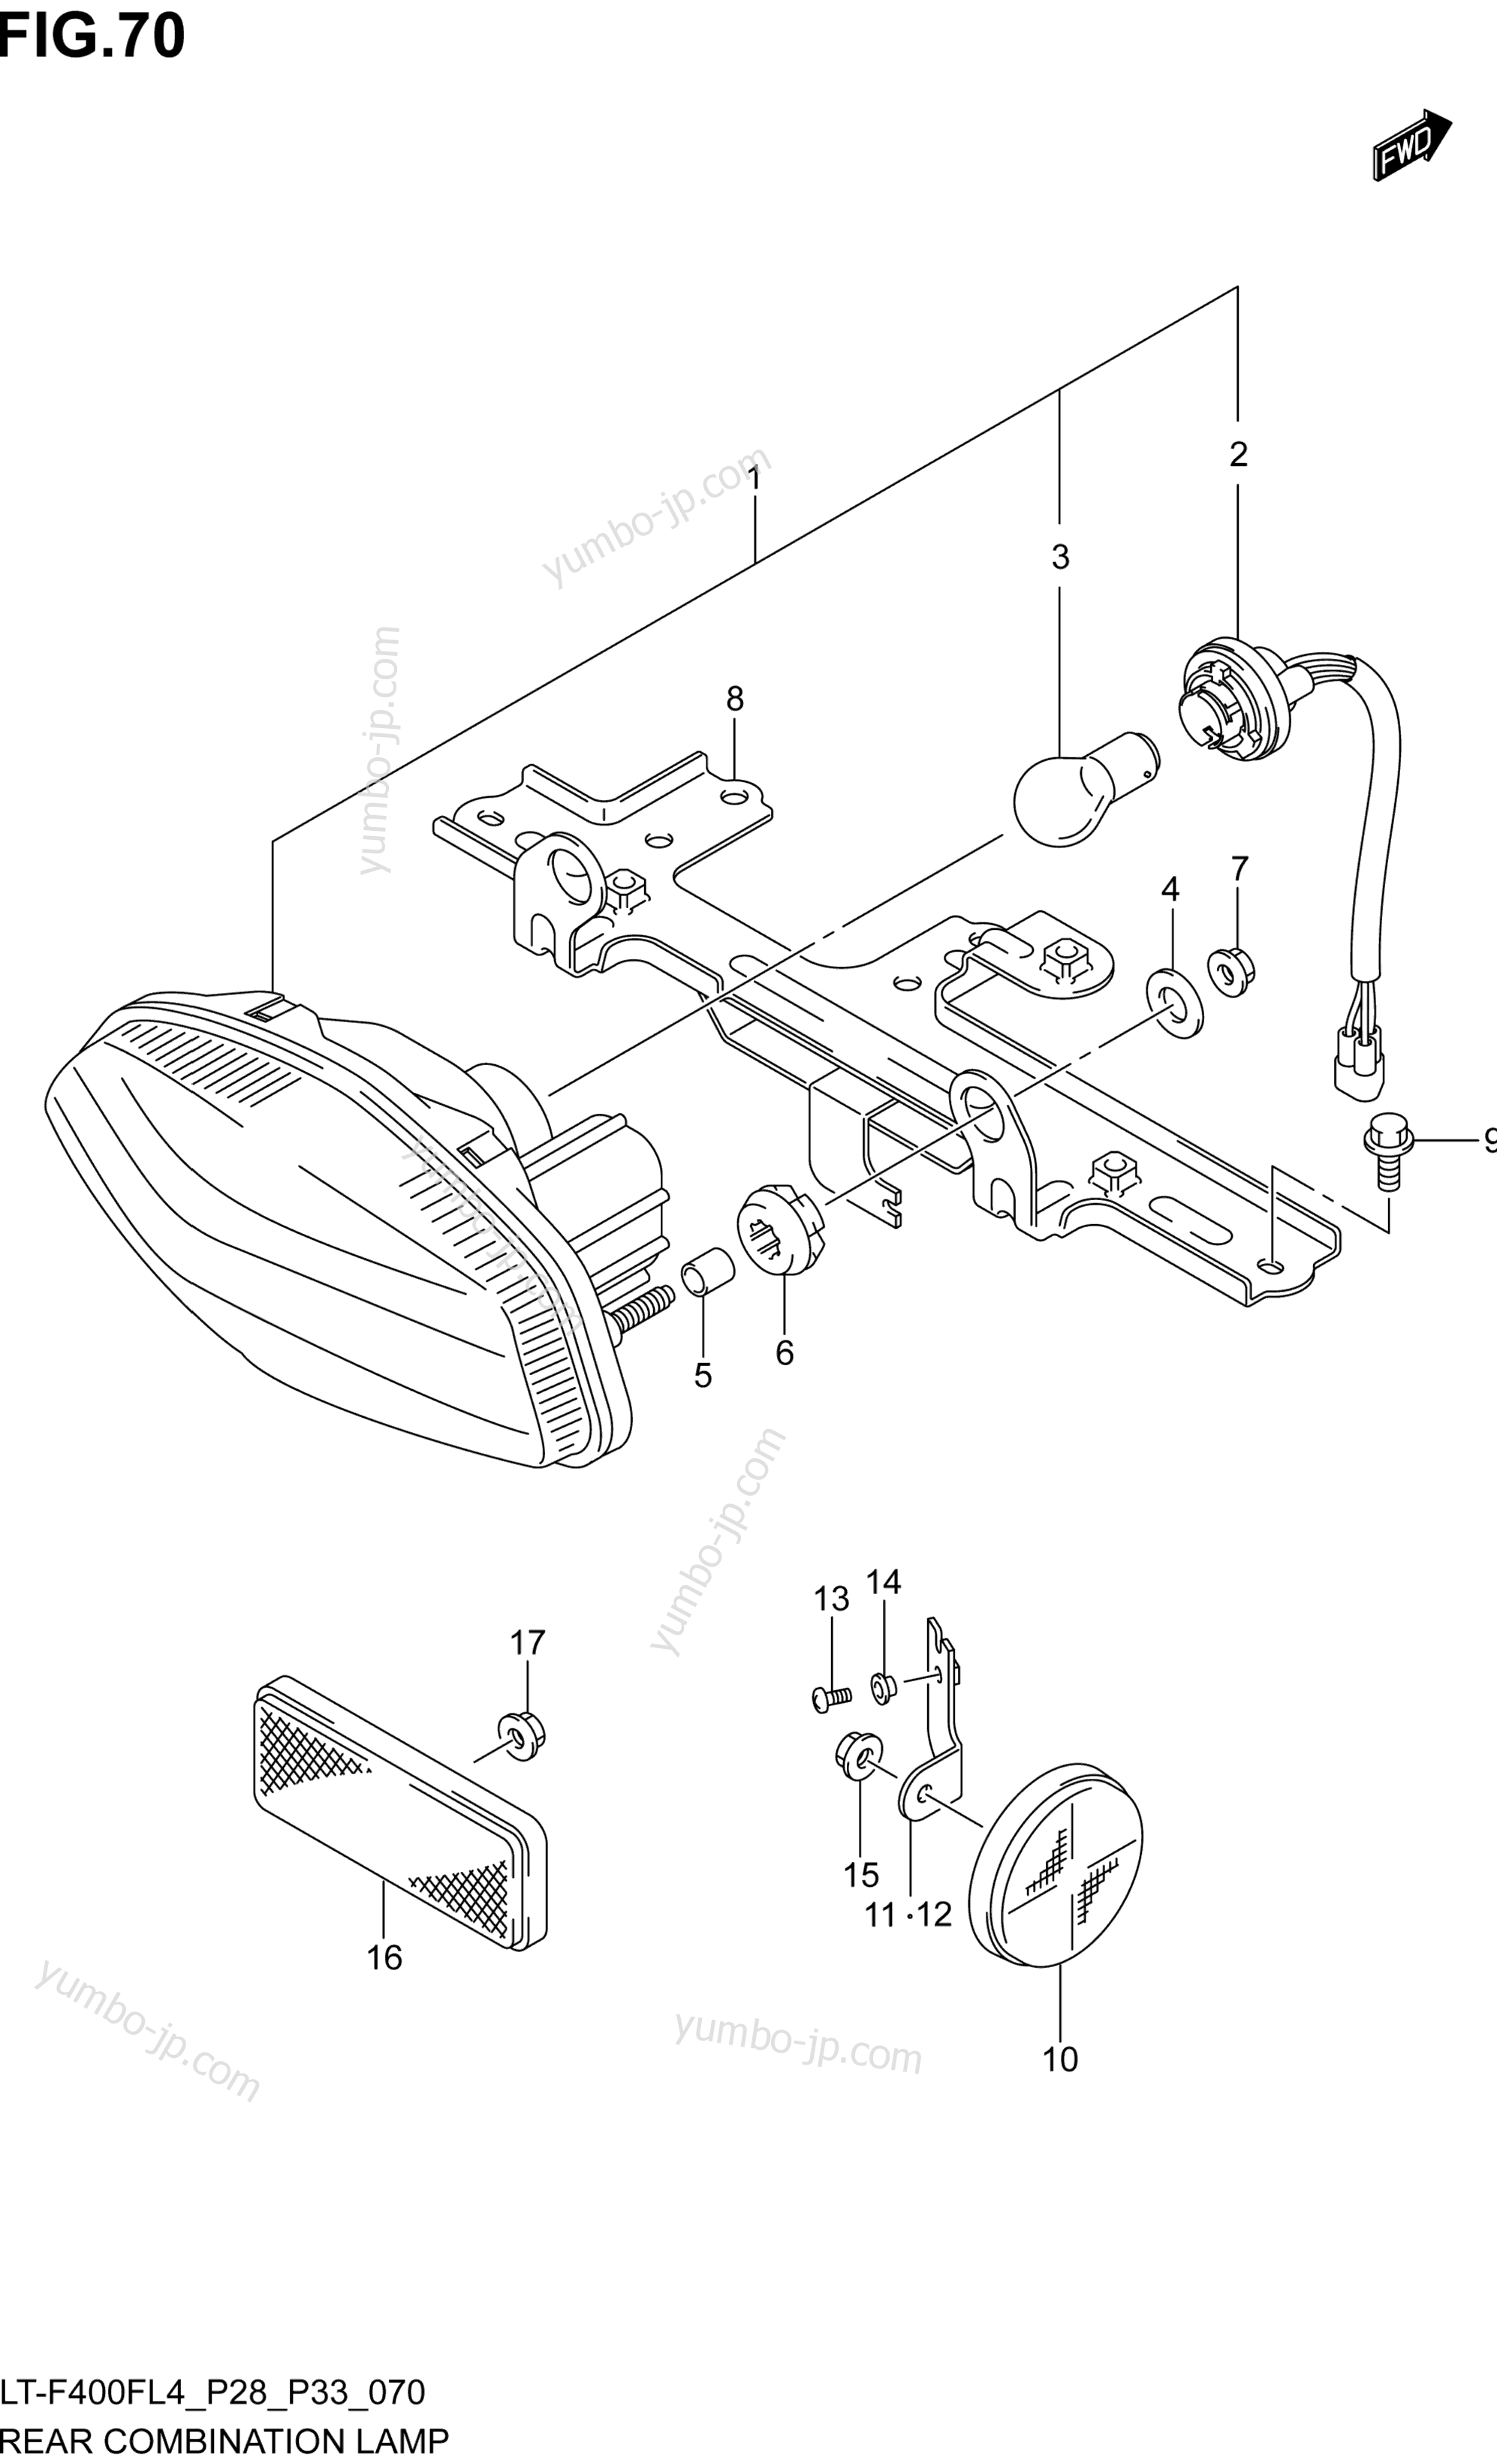 REAR COMBINATION LAMP (LT-F400FZL4 P28) для квадроциклов SUZUKI LT-F400FZ 2014 г.